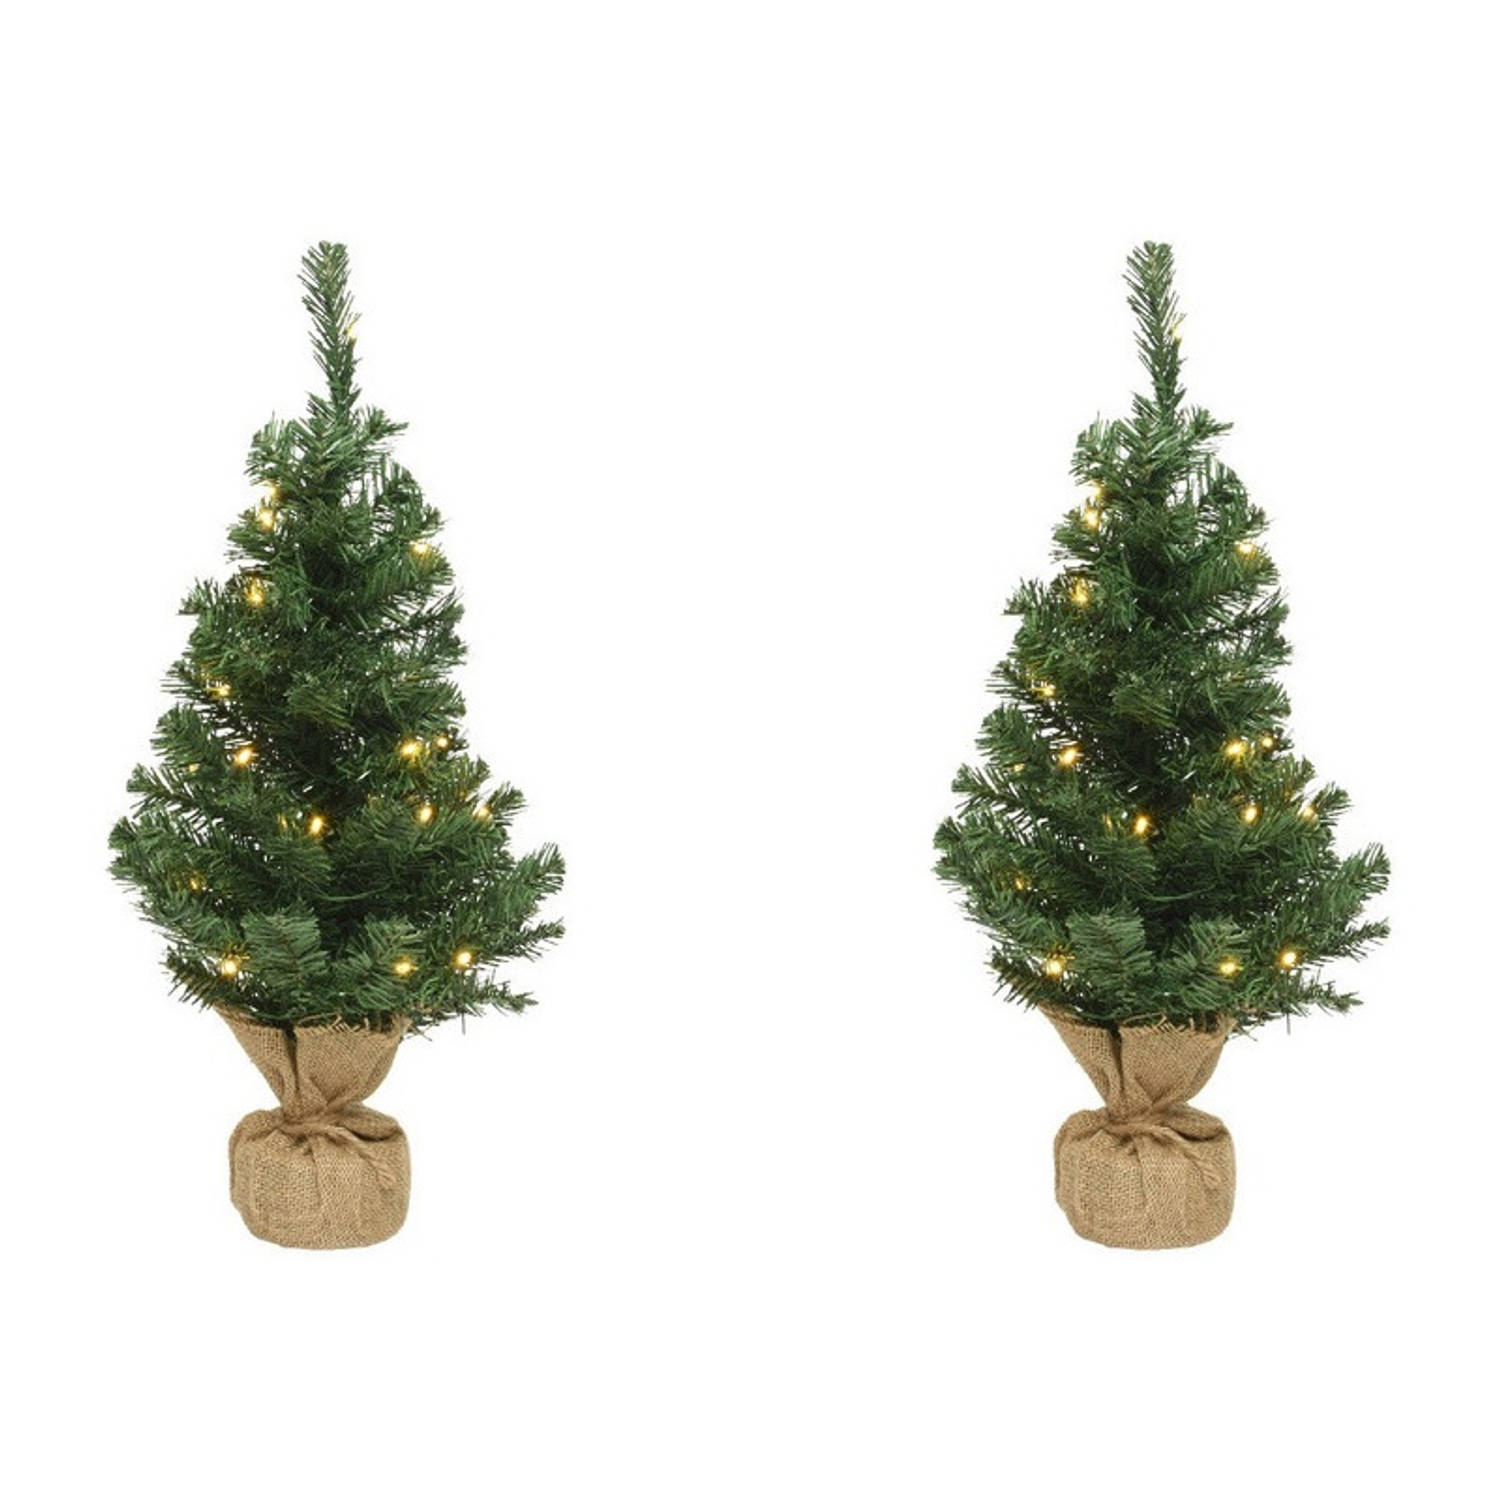 2x Volle Mini Kerstbomen Groen In Jute Zak Met Verlichting 90 Cm Kunstkerstboom